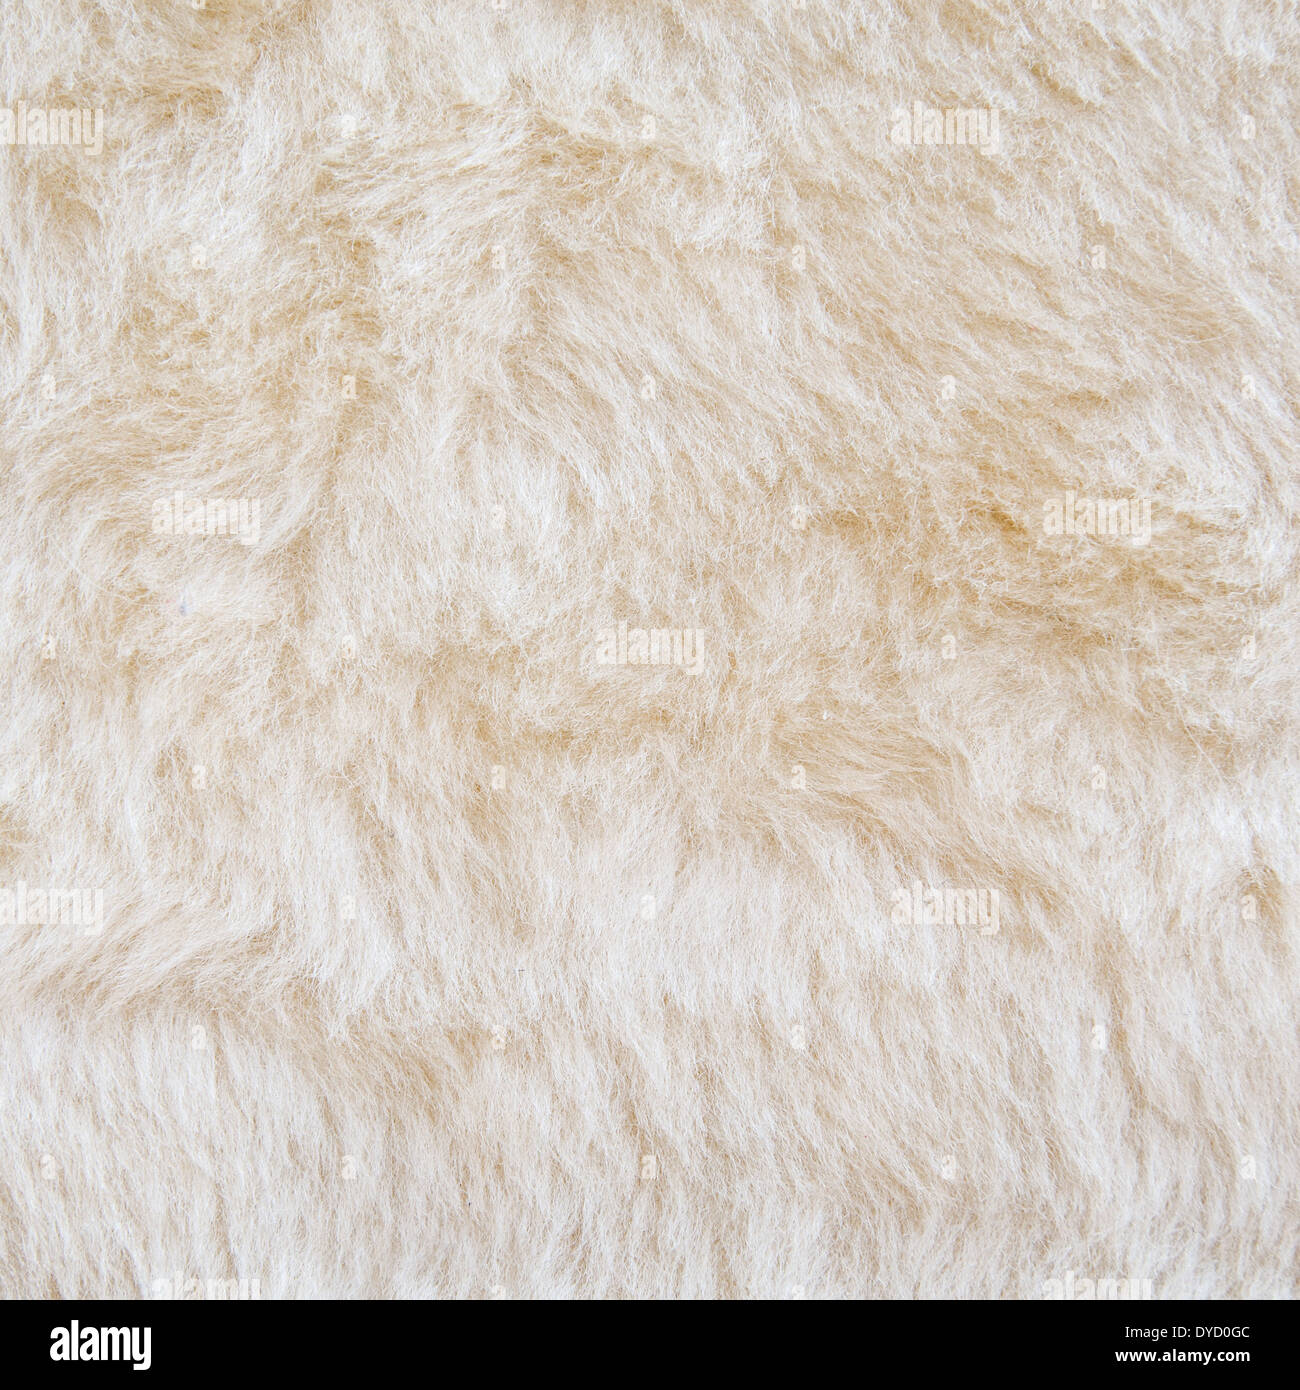 White fur of polar bear texture background Stock Photo